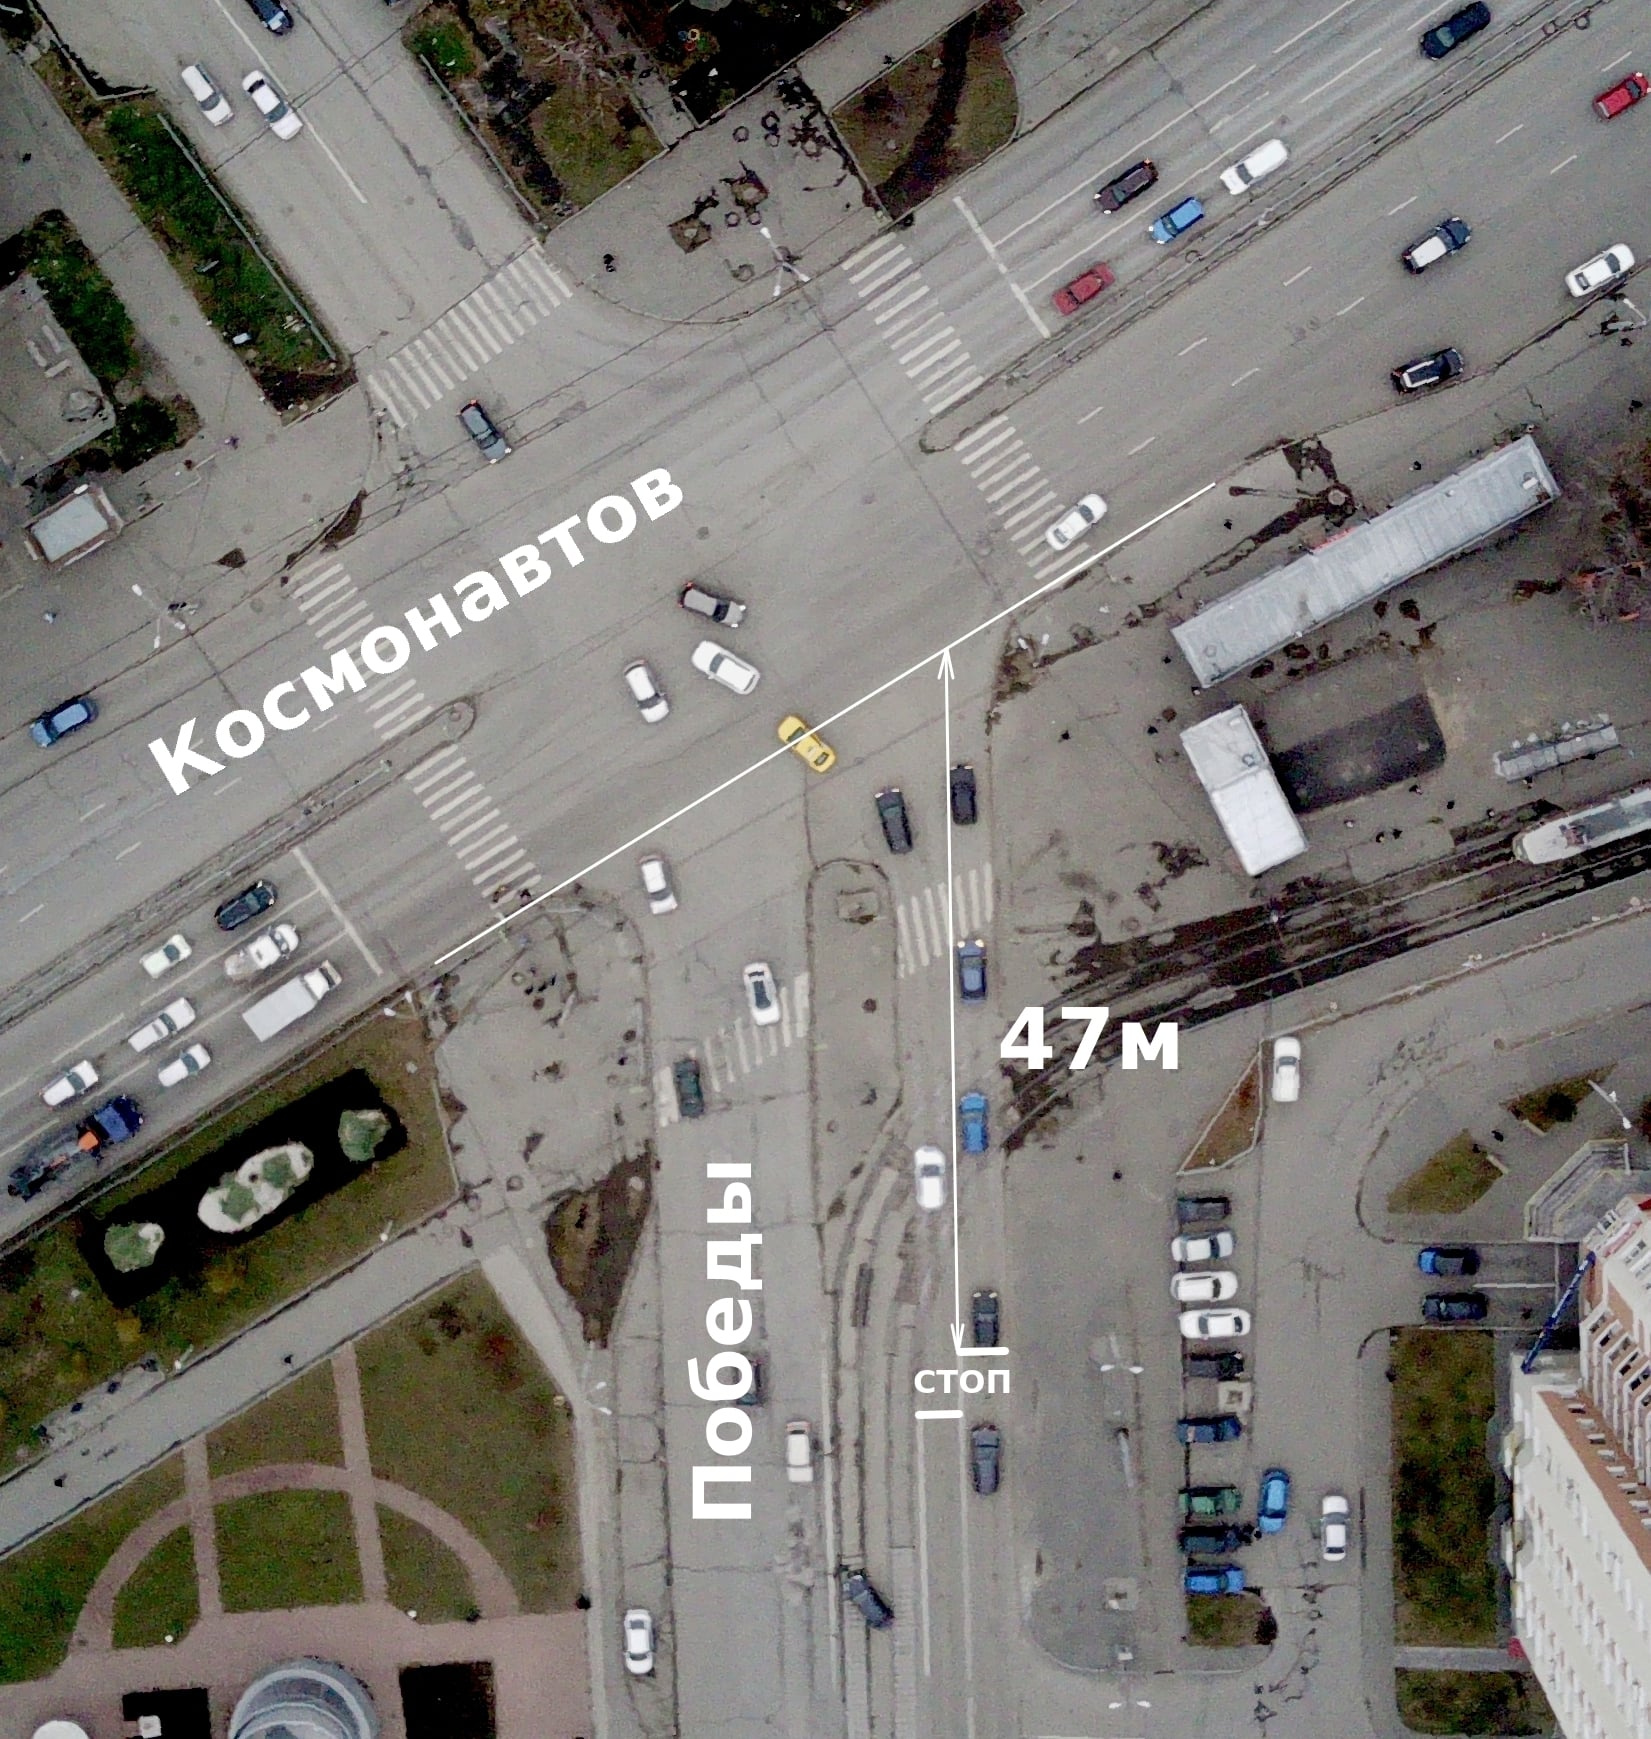 Перекресток проспекта Космонавтов и Победы. От стоп-линии до пересечения проезжих частей целых 47 метров. И на этом отрезке есть трамвайная линия и пешеходный переход